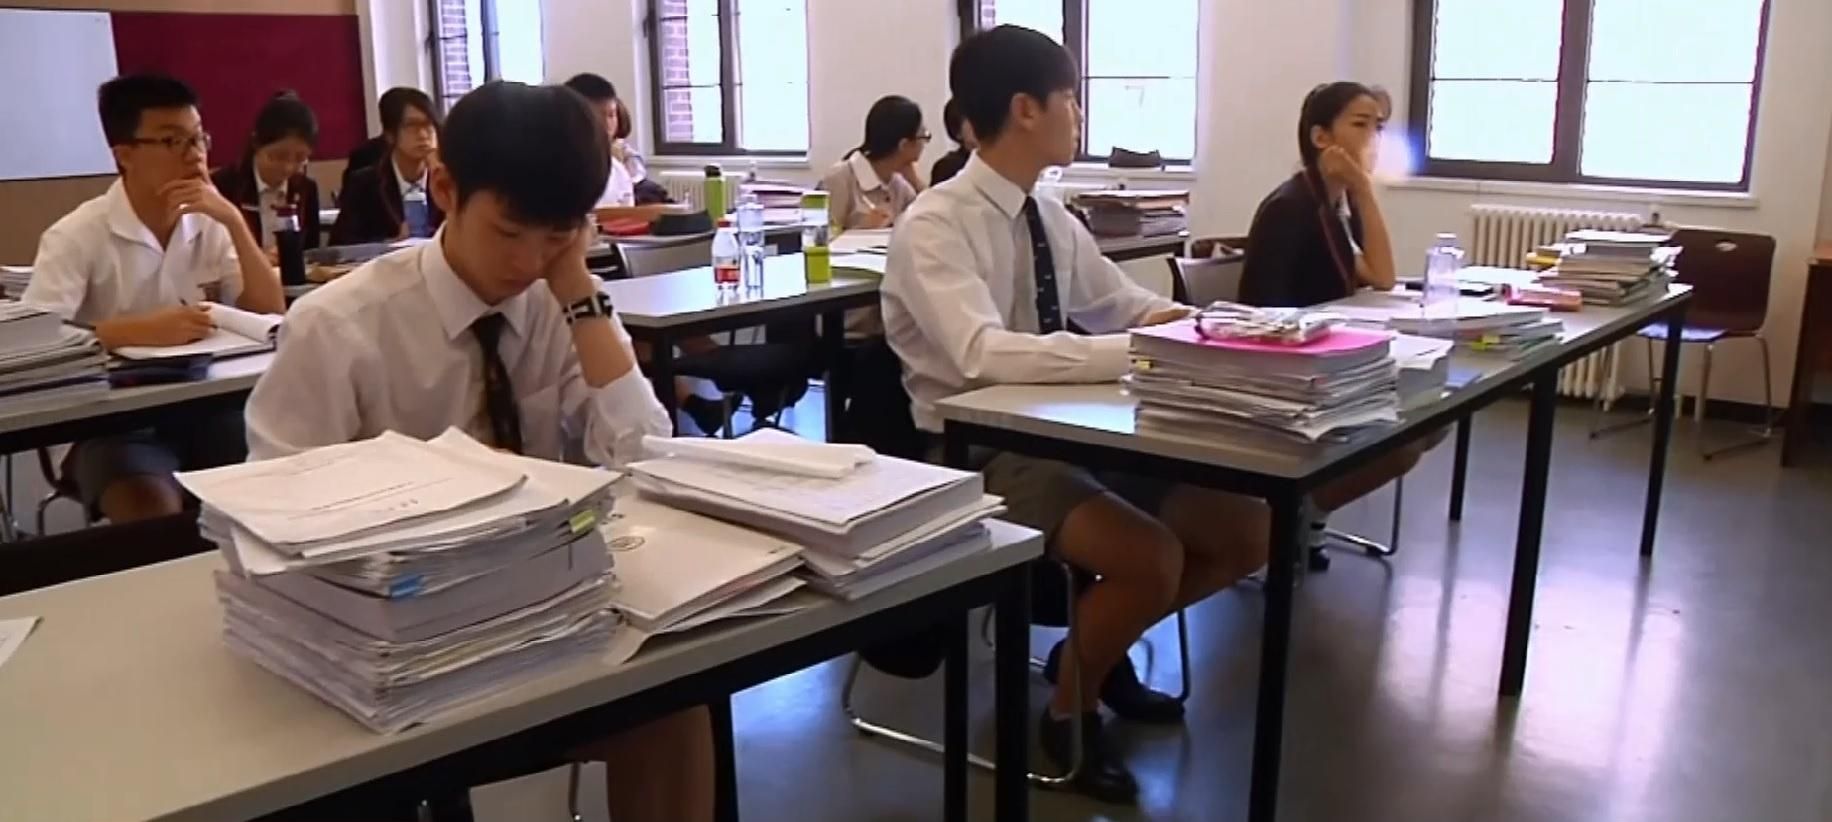 В Китае растет популярность международных школ